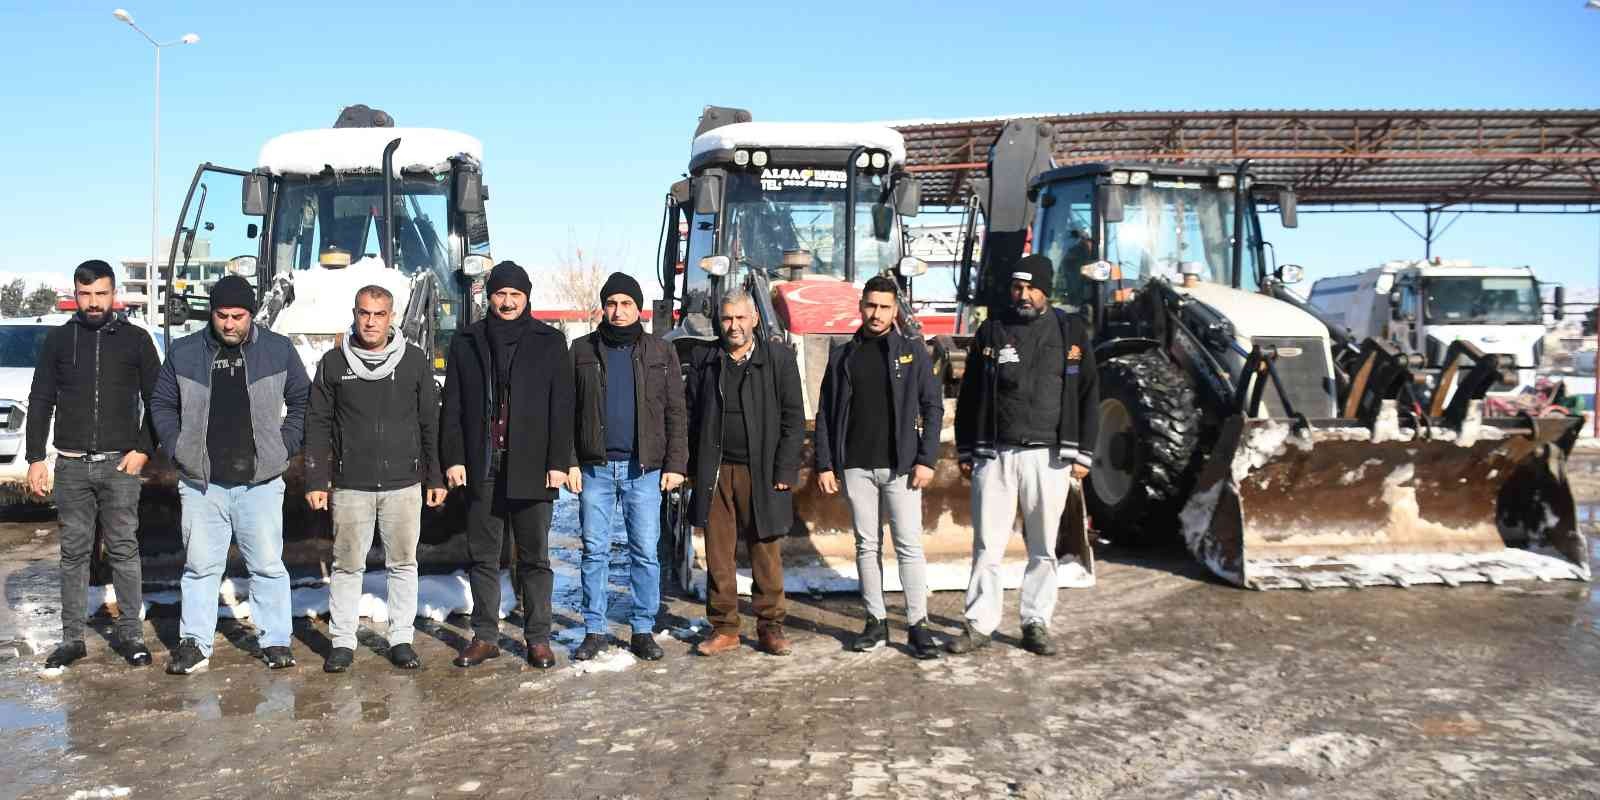 Araban’da kar ve buz temizleme çalışmaları sürdürüyor #gaziantep